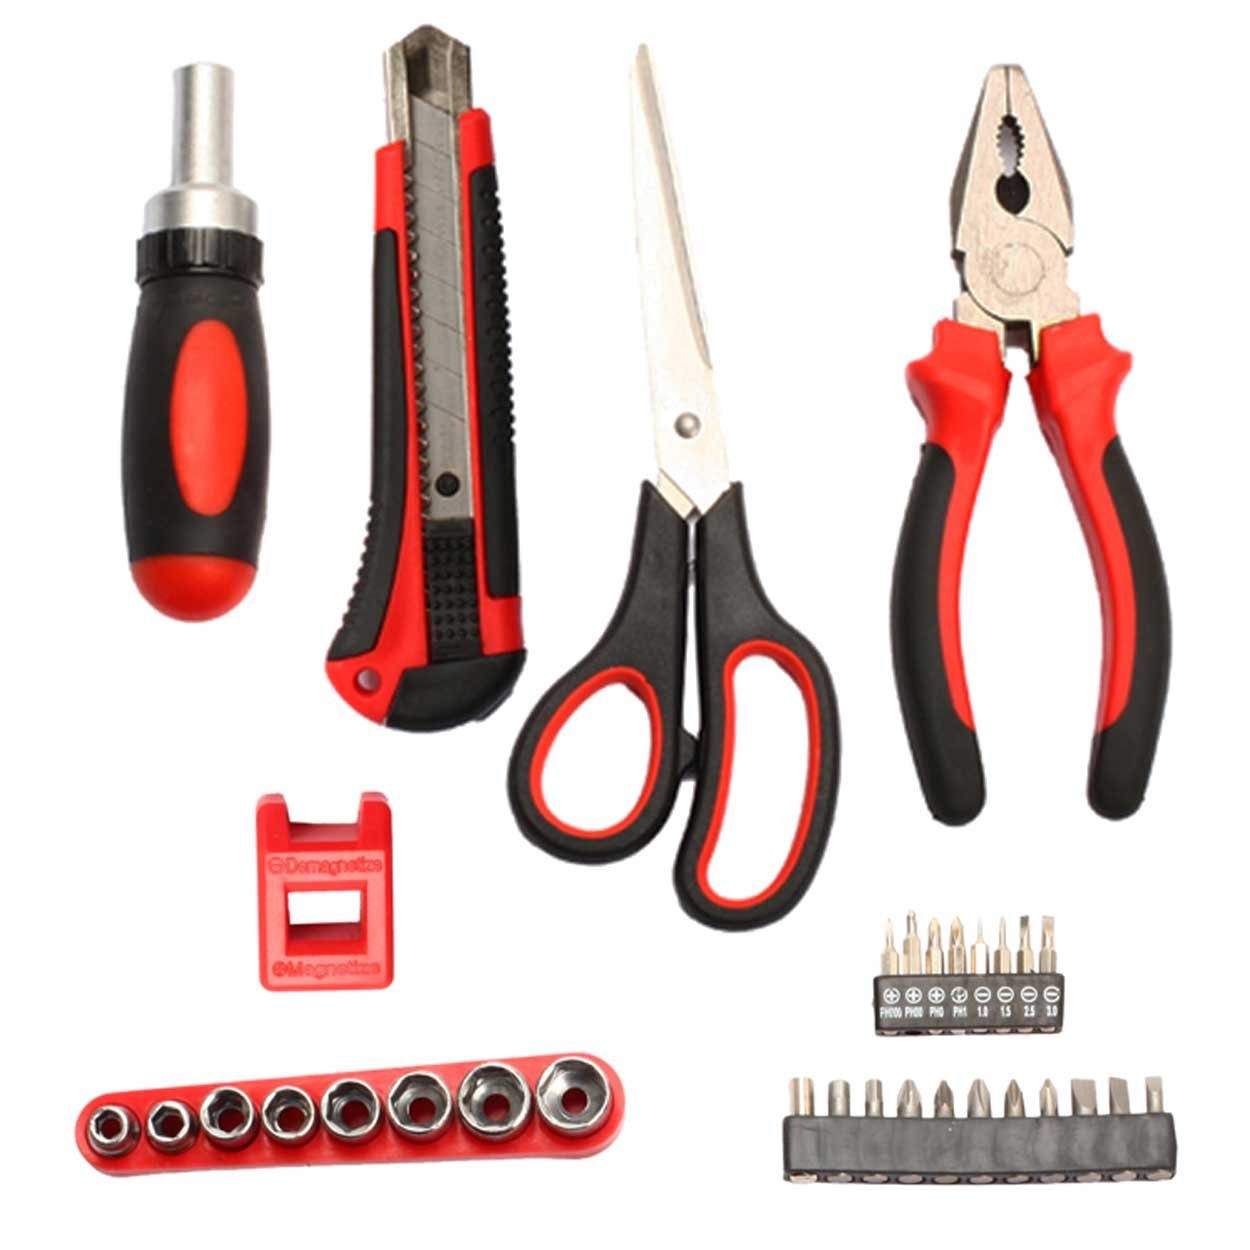 32-teilig Handwerkzeug Box Werkzeugsatz Werkzeugkoffer security Set TS-32 SCHMIDT tools Werkzeugset